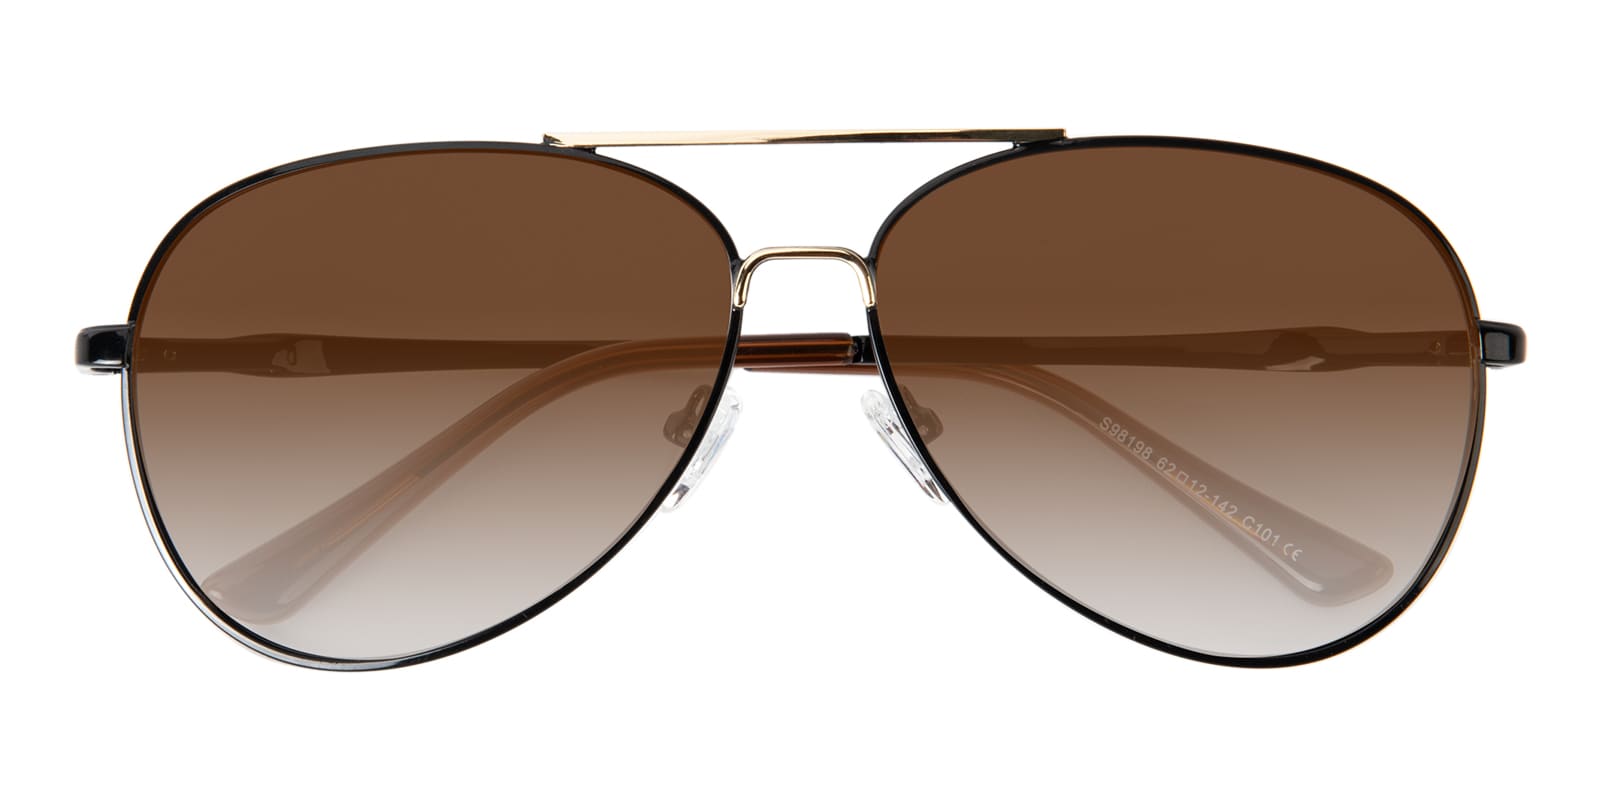 Aviator Sunglasses, Full Frame Black/Golden Metal - SUP0822